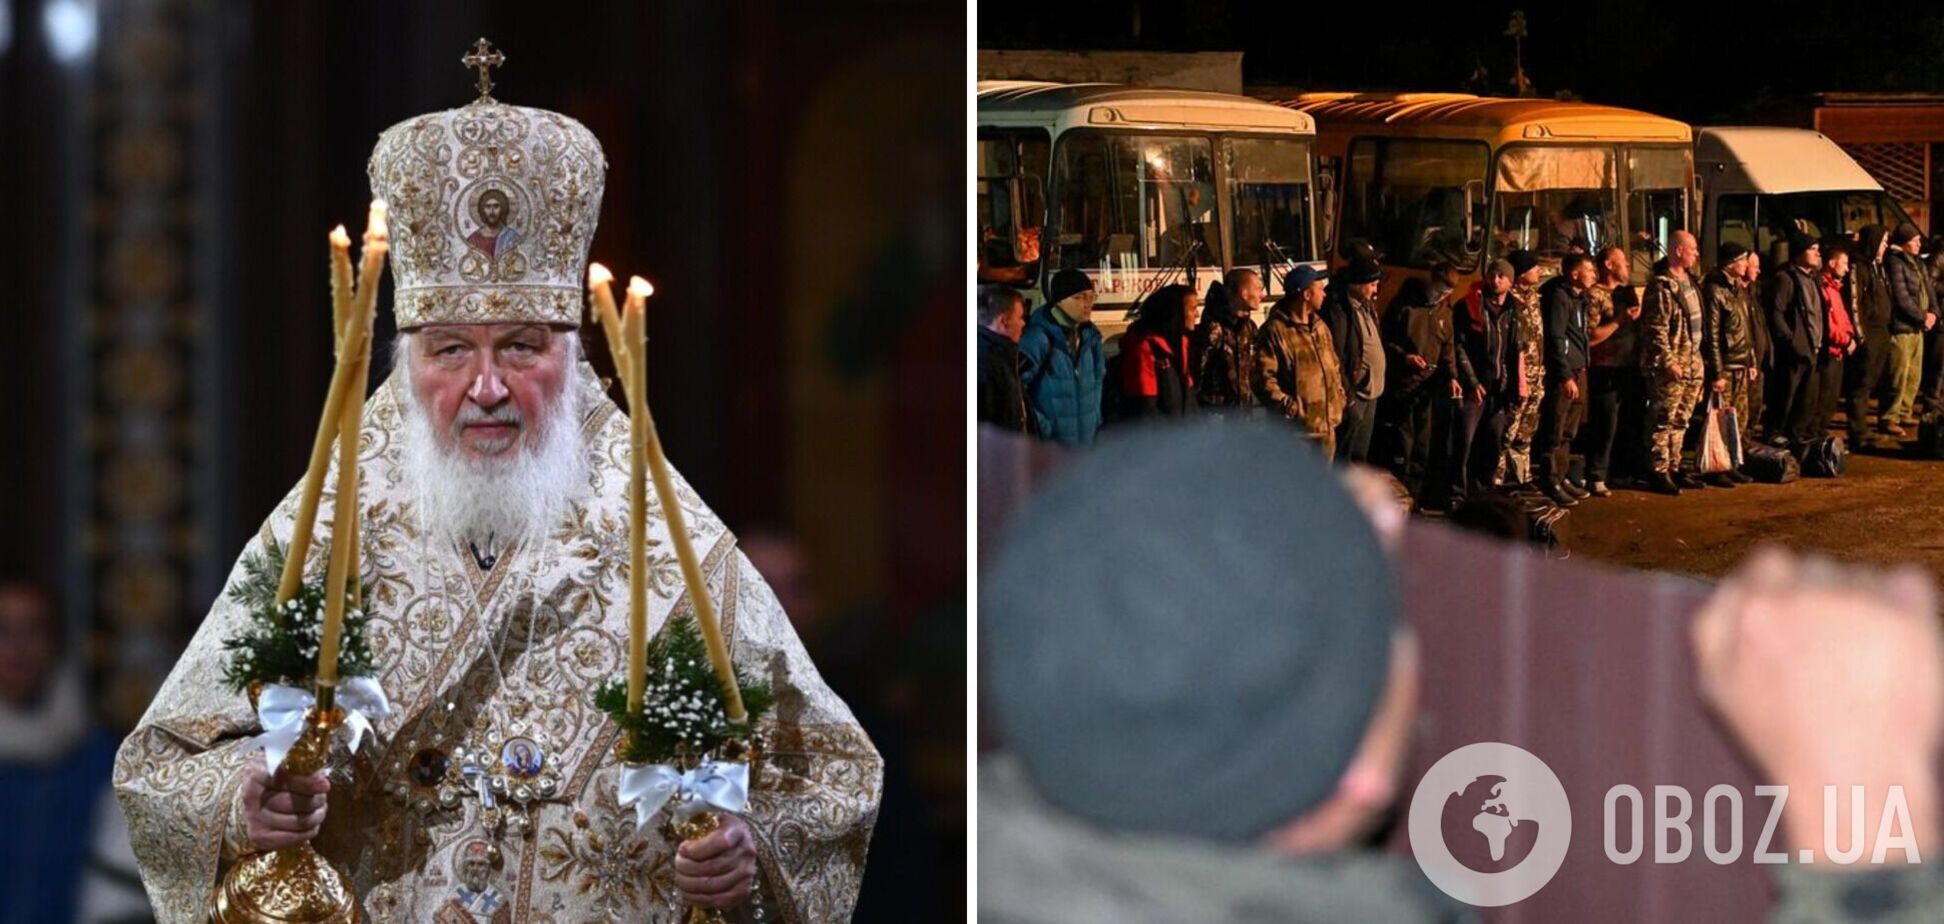 'Шукайте можливості, збирайте гроші': патріарх Кирило закликав росіян забезпечити армію всім необхідним для війни проти України 